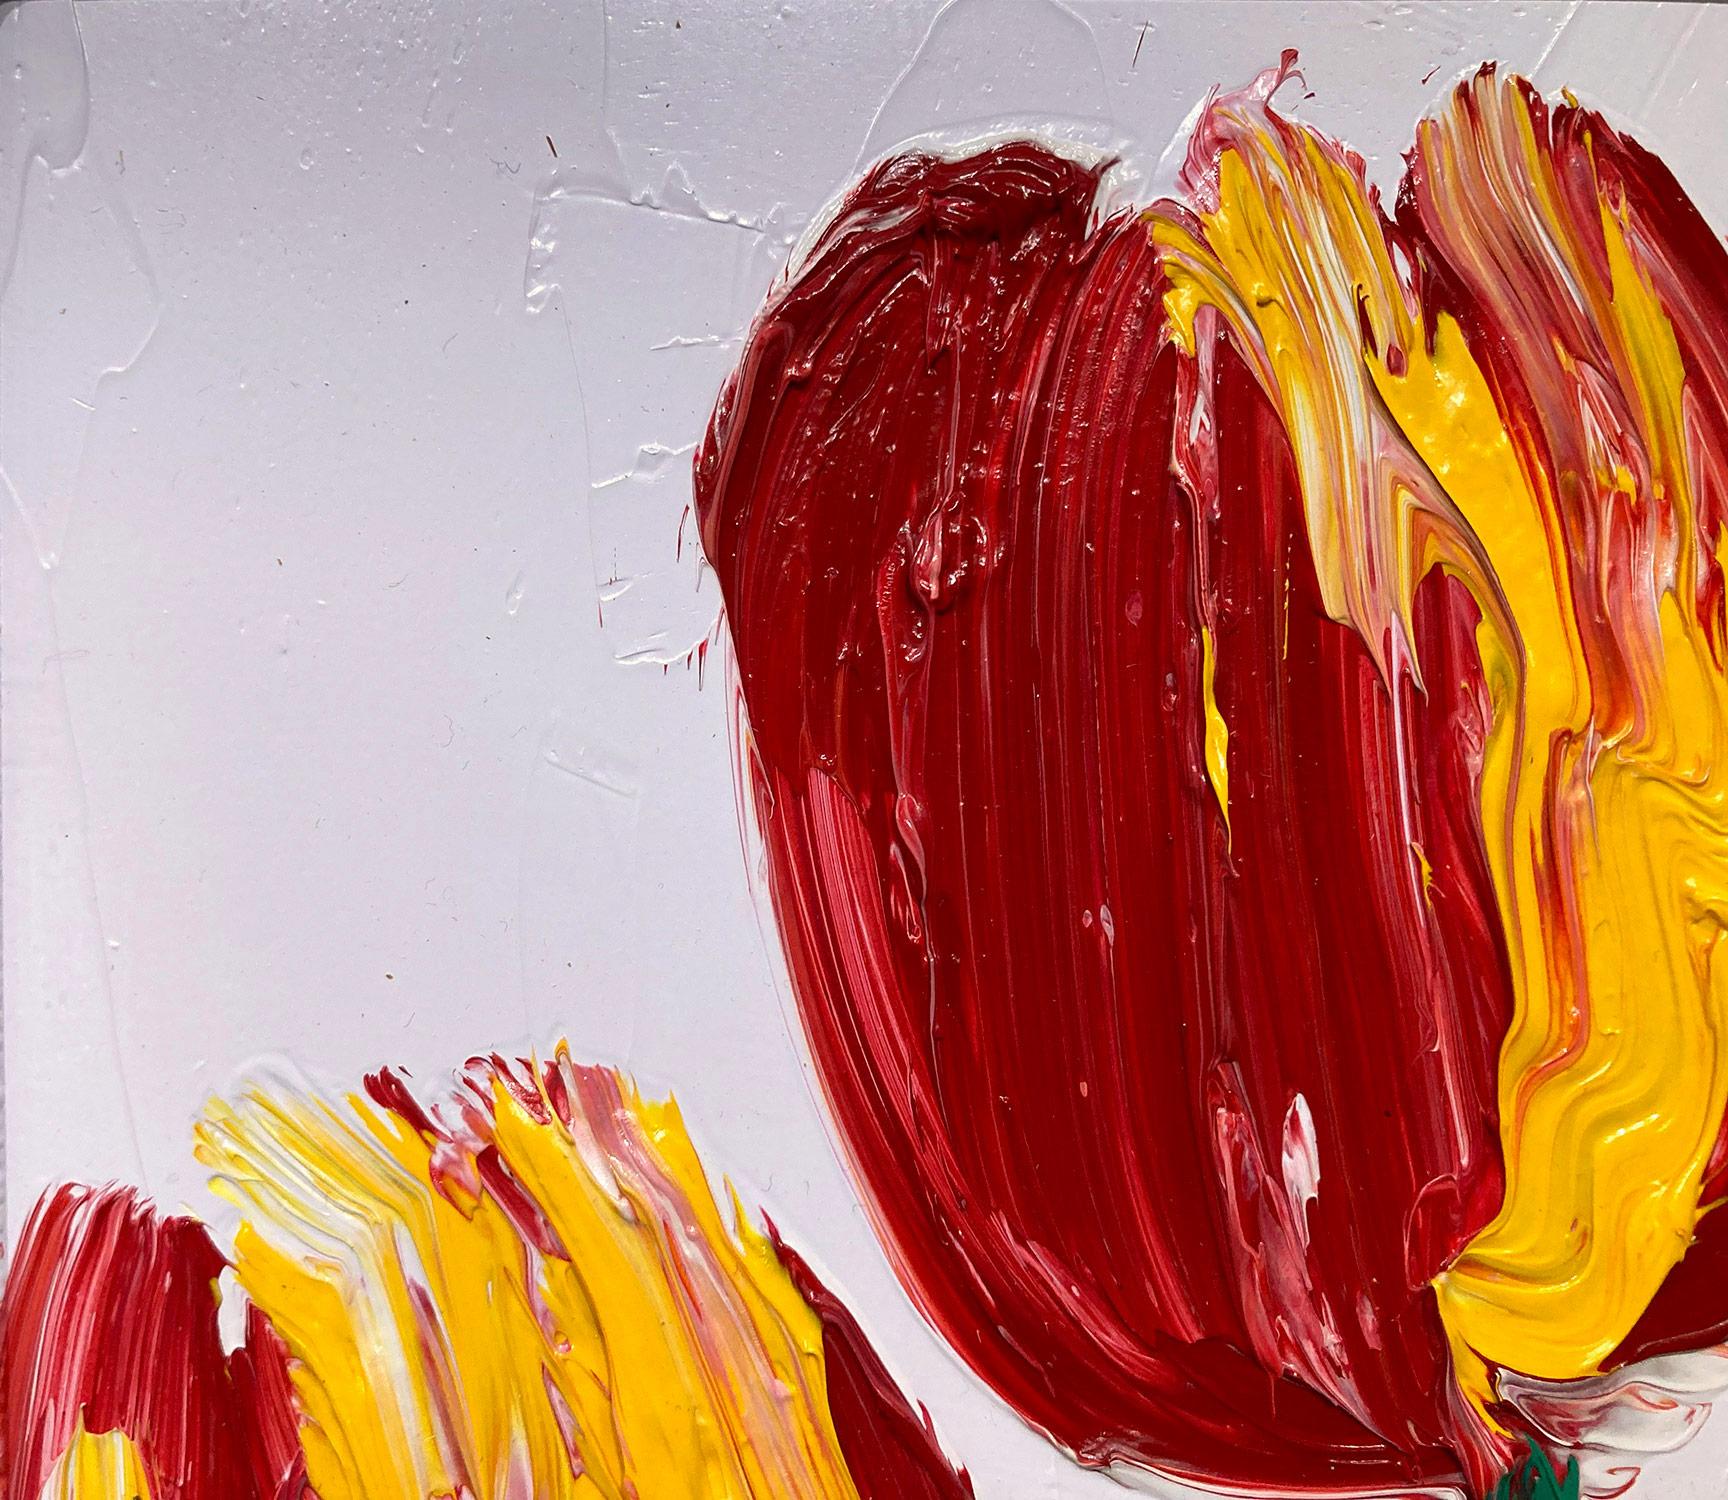 Une magnifique composition de l'une des plus récentes séries de Slonem, Tulipes. Cette pièce représente des figures gestuelles de tulipes rouges et jaunes sur un fond lavande clair, avec une utilisation épaisse de la peinture. Il est présenté dans